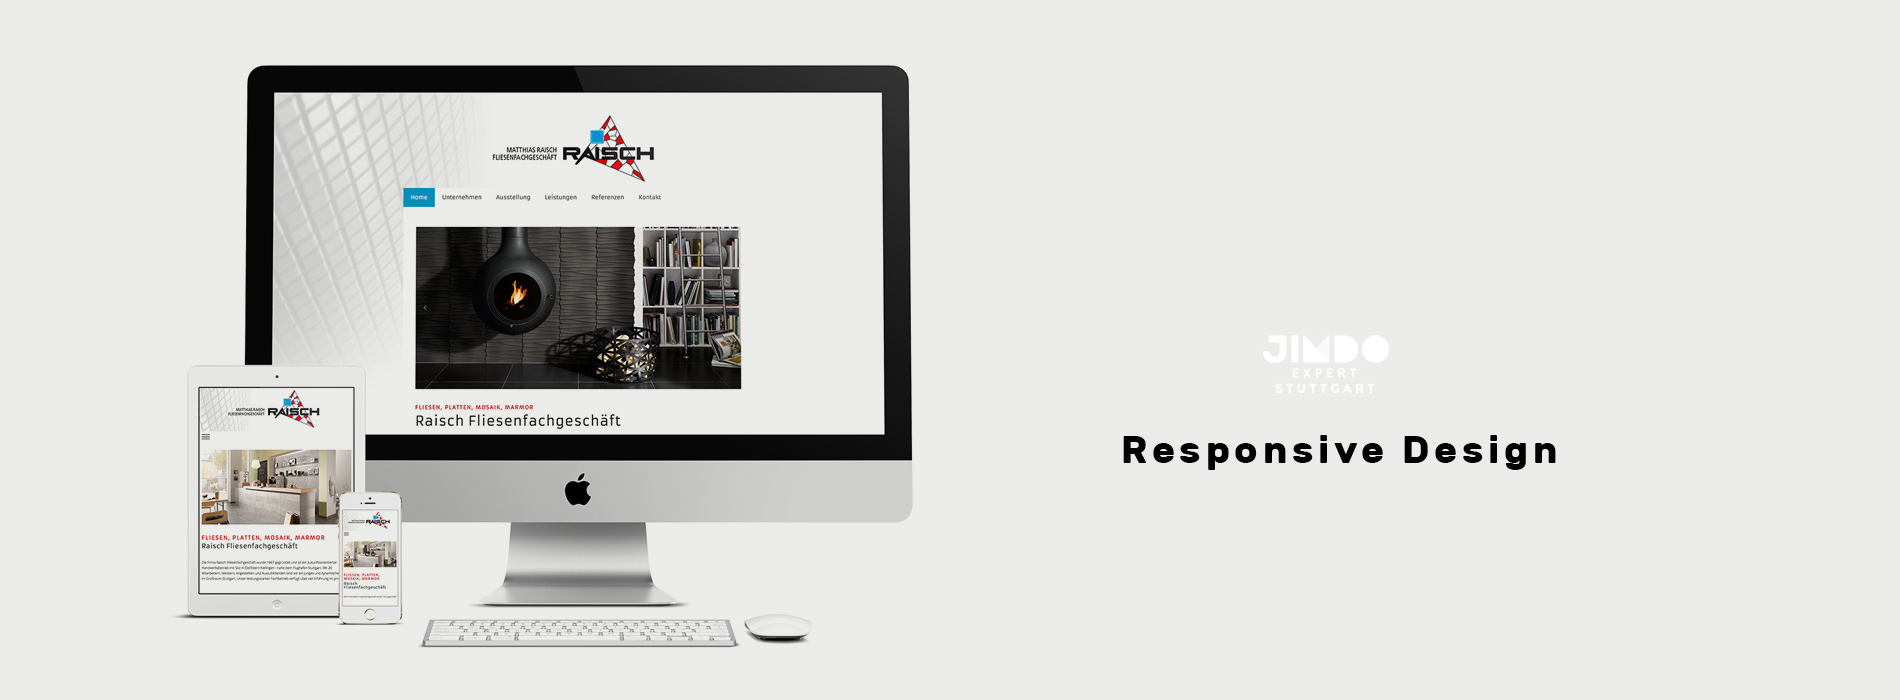 Jimdo Expert Stuttgart - Webdesign, Responsive Design, SEO - Peter Scheerer